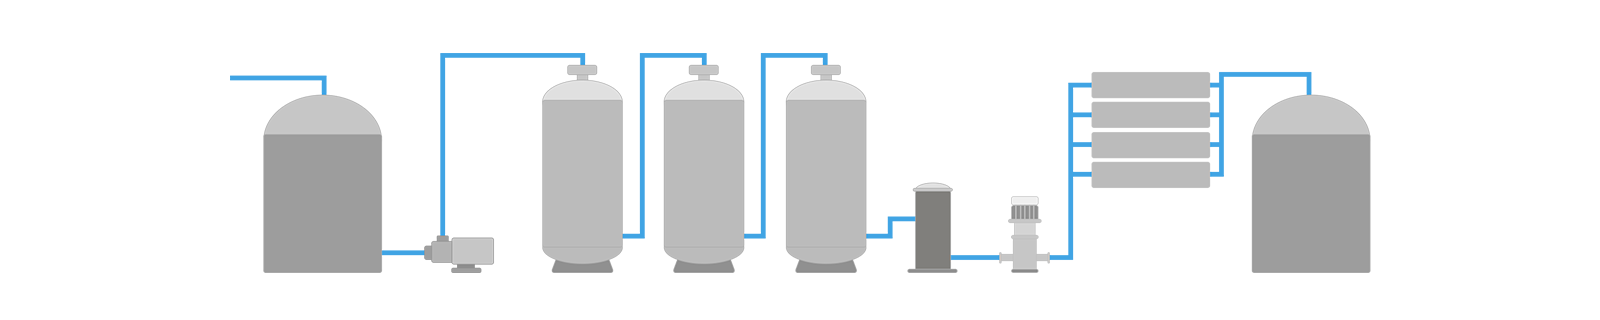 RO water purification process